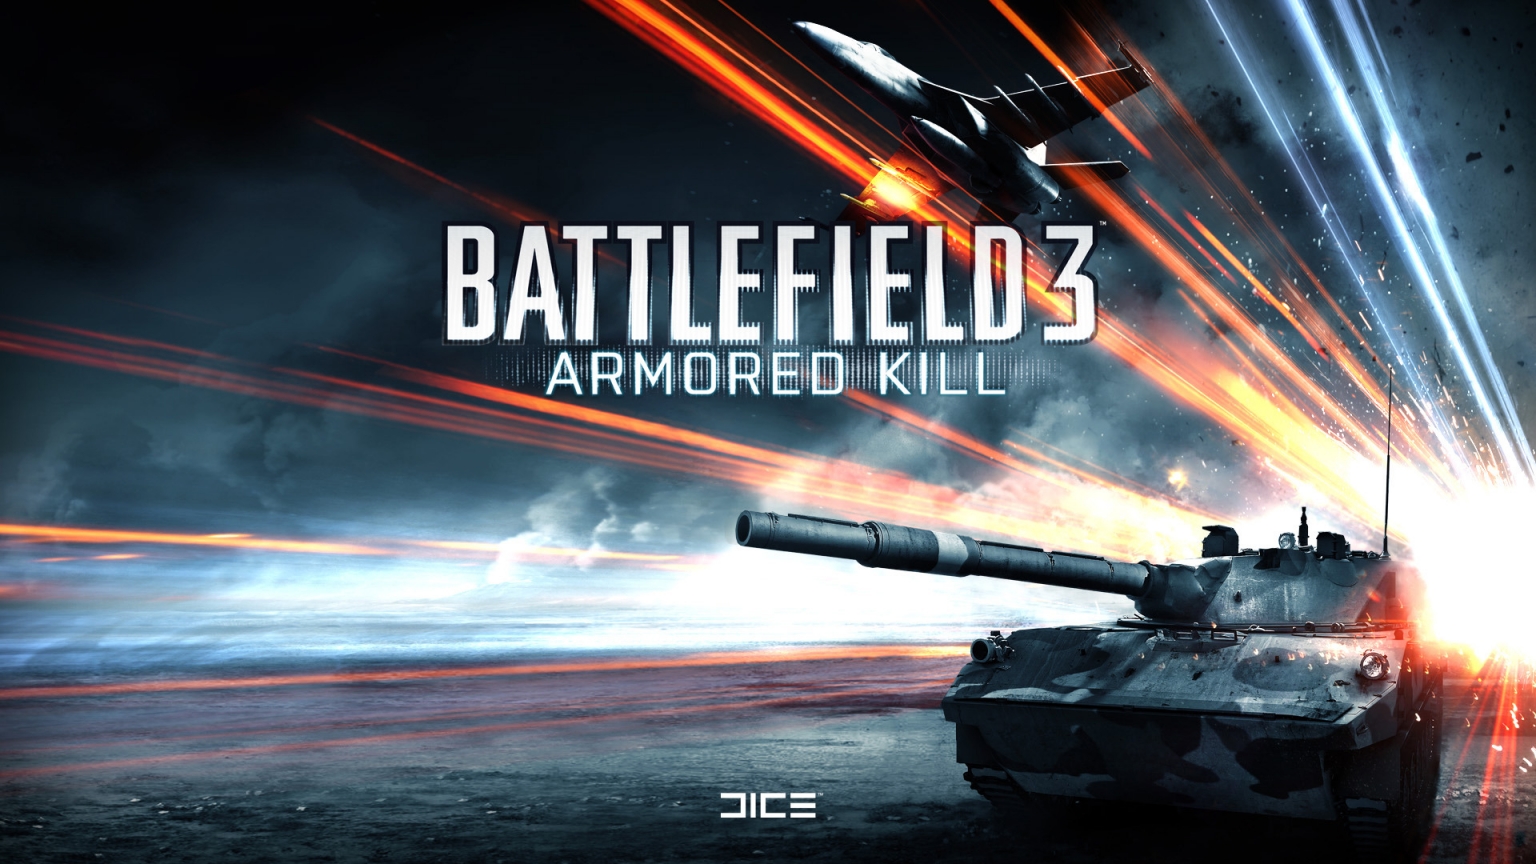 Battlefield 3 Armored Kill for 1536 x 864 HDTV resolution